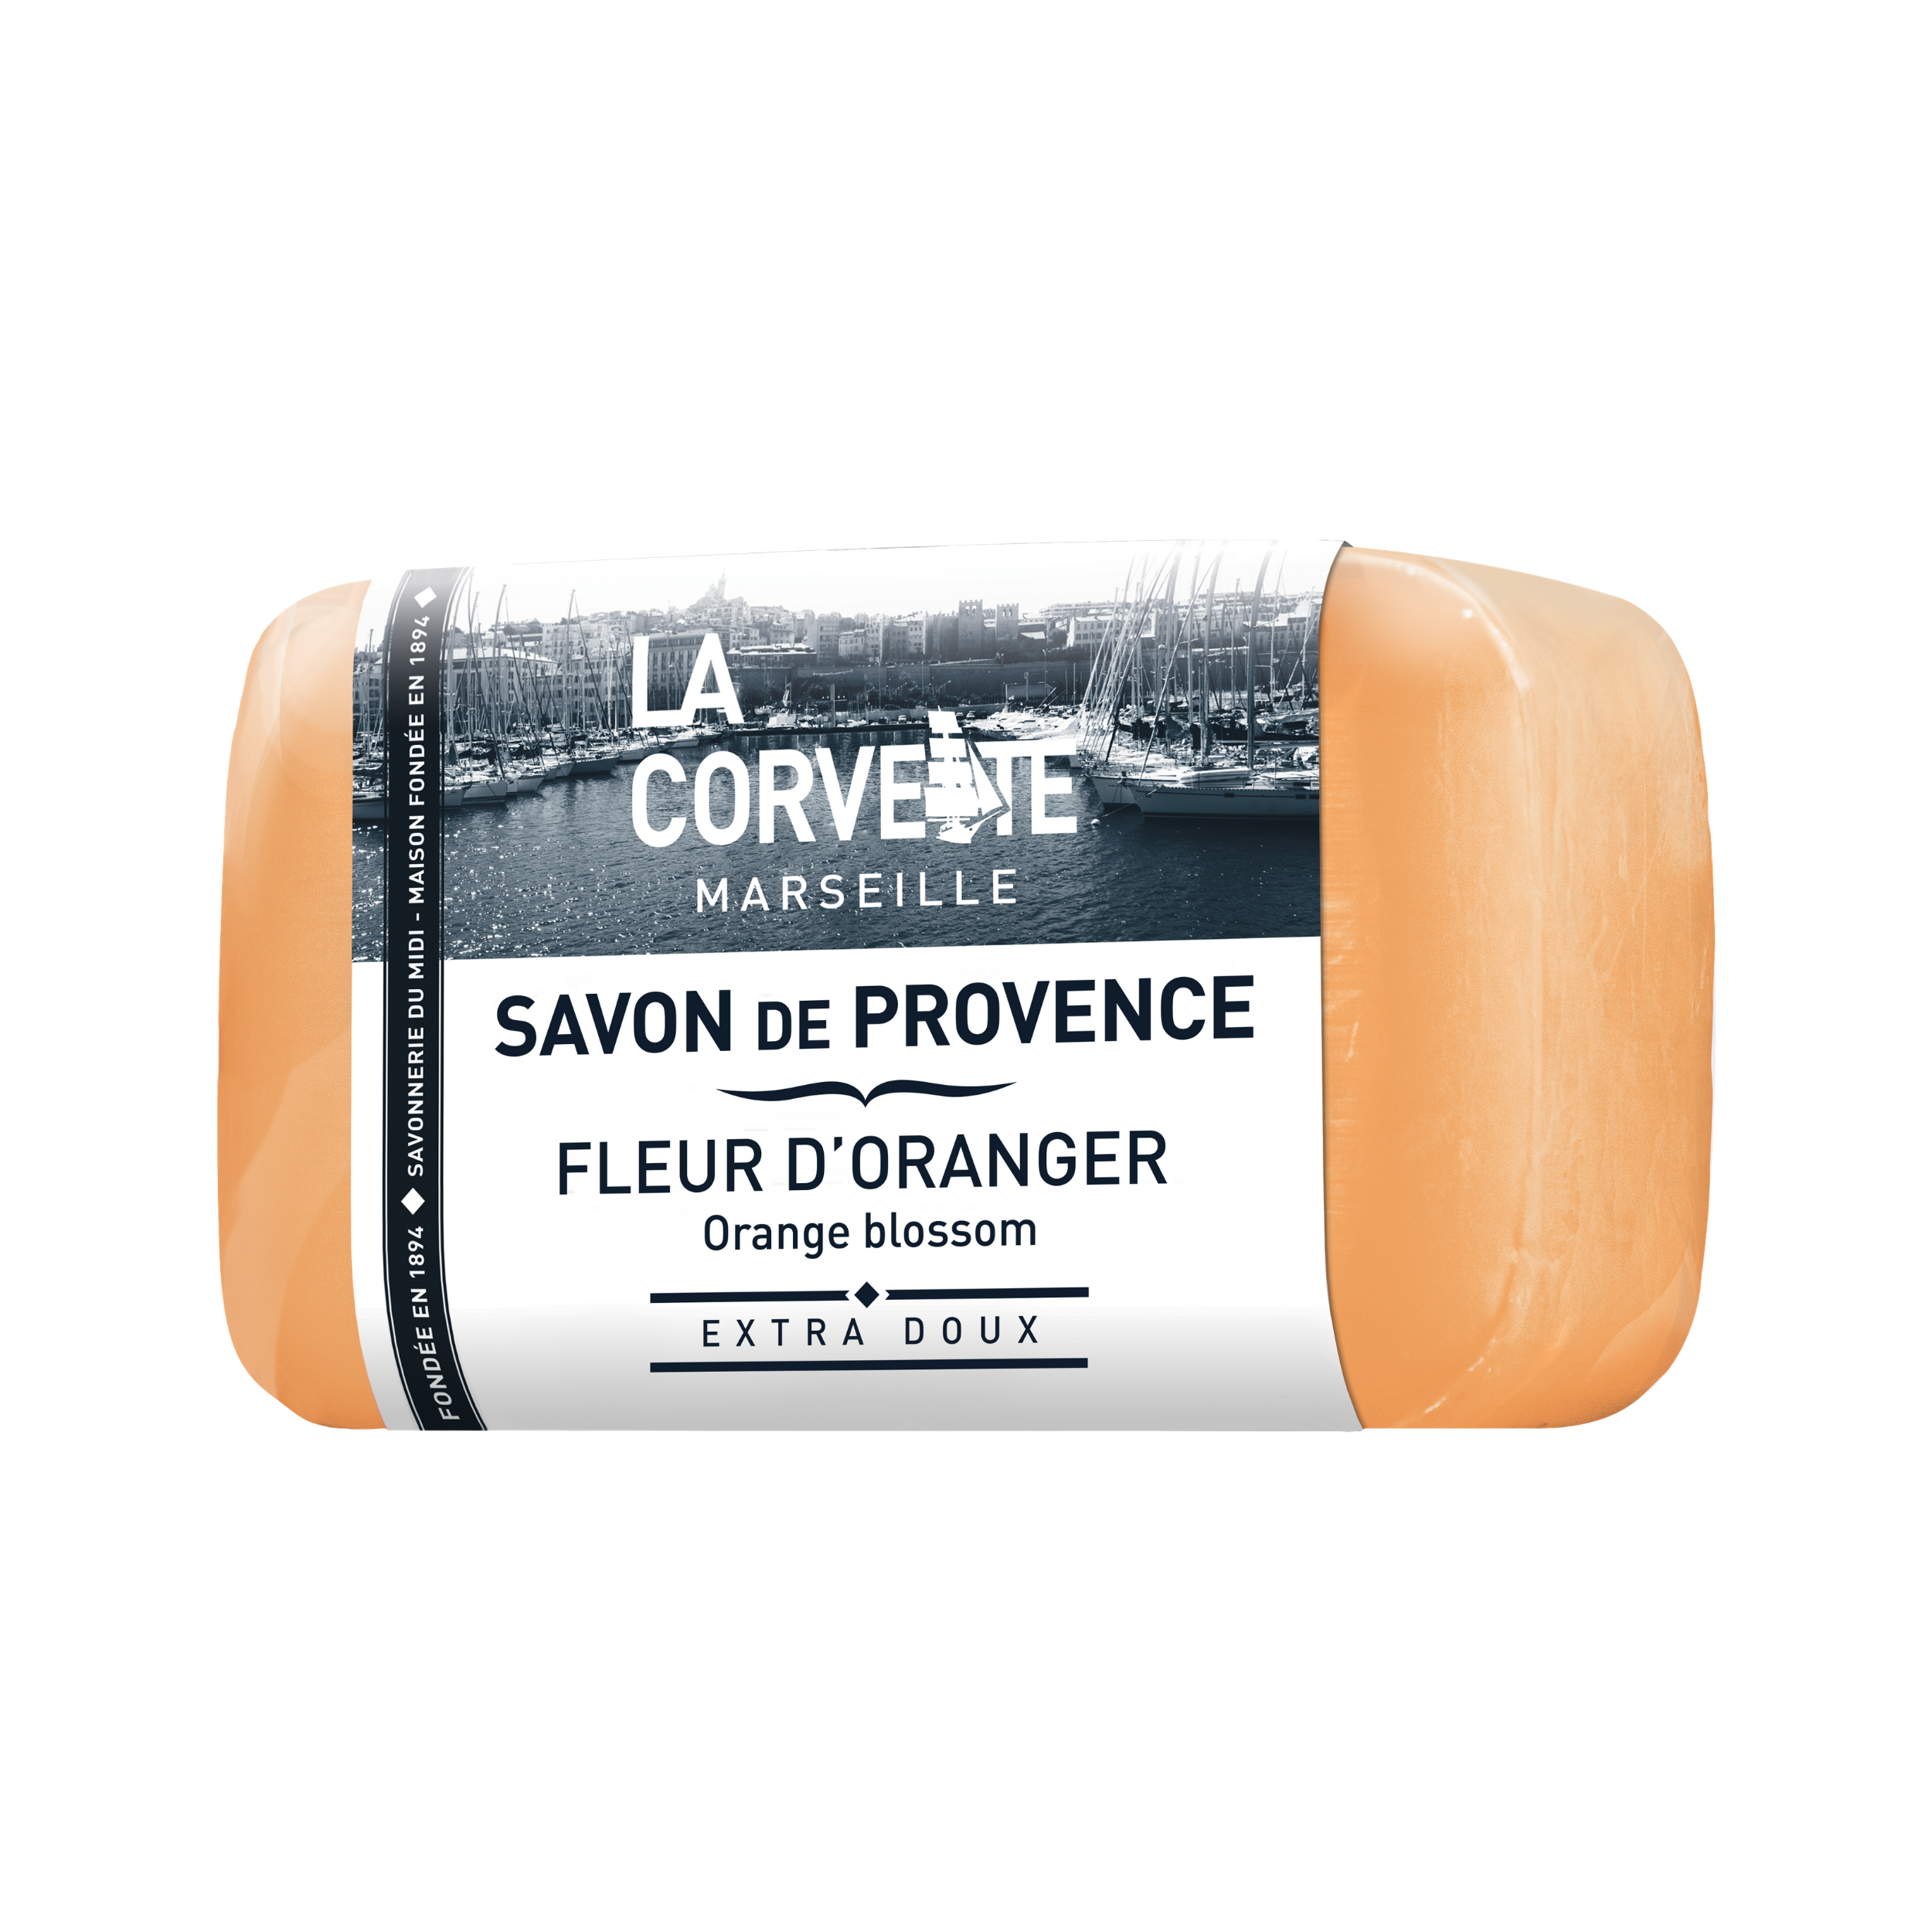 La Corvette Marseille Provence Soap  with Orange Blossom100g